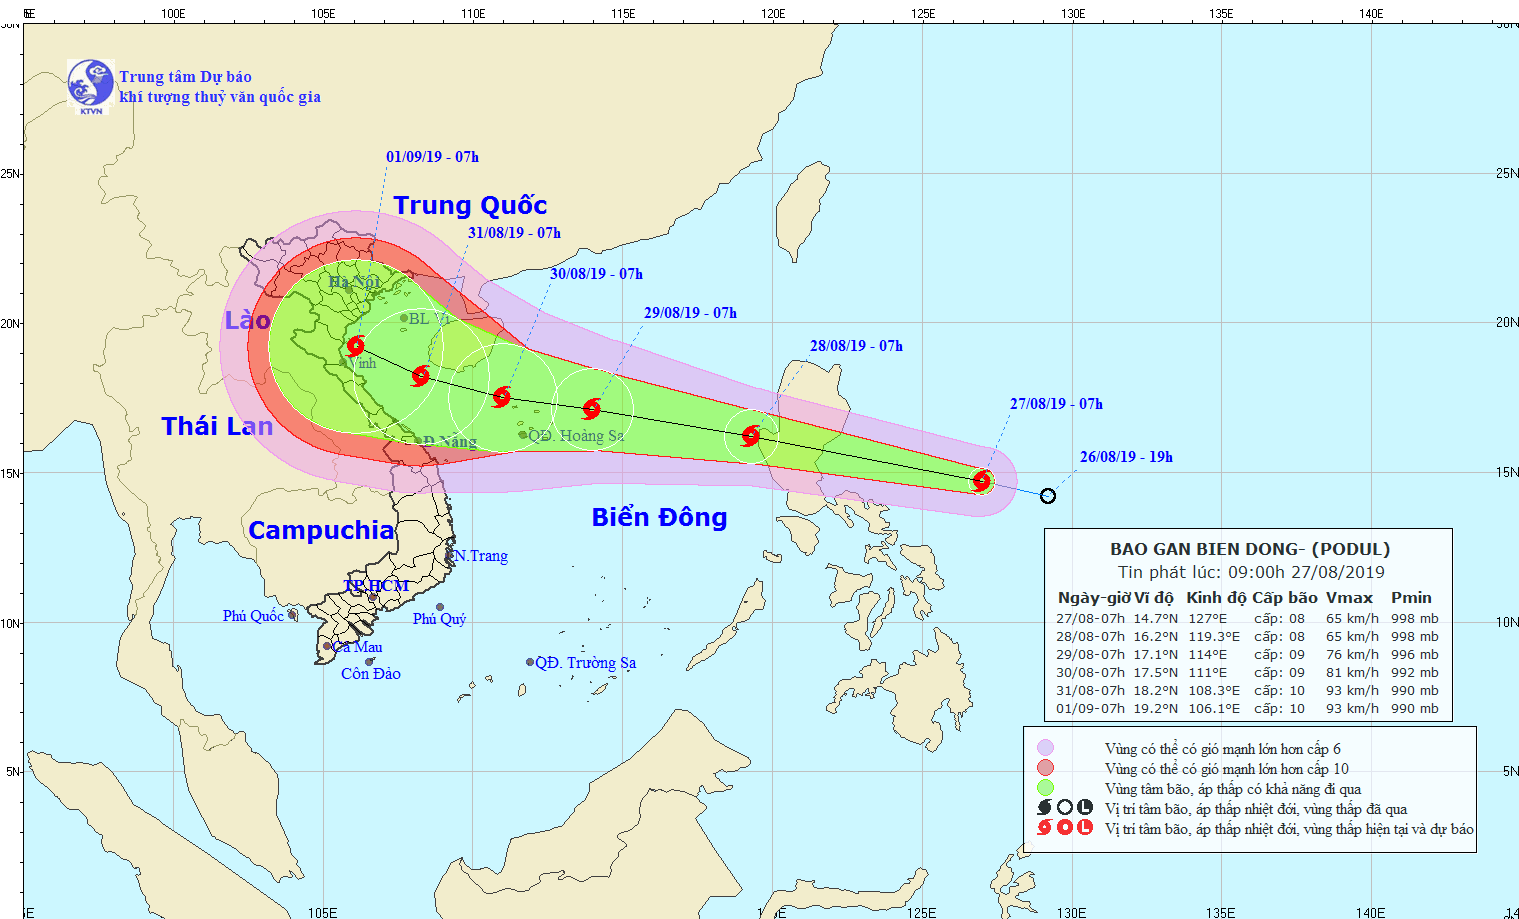 Sáng ngày 27/8: Xuất hiện cơn bão gần biển Đông